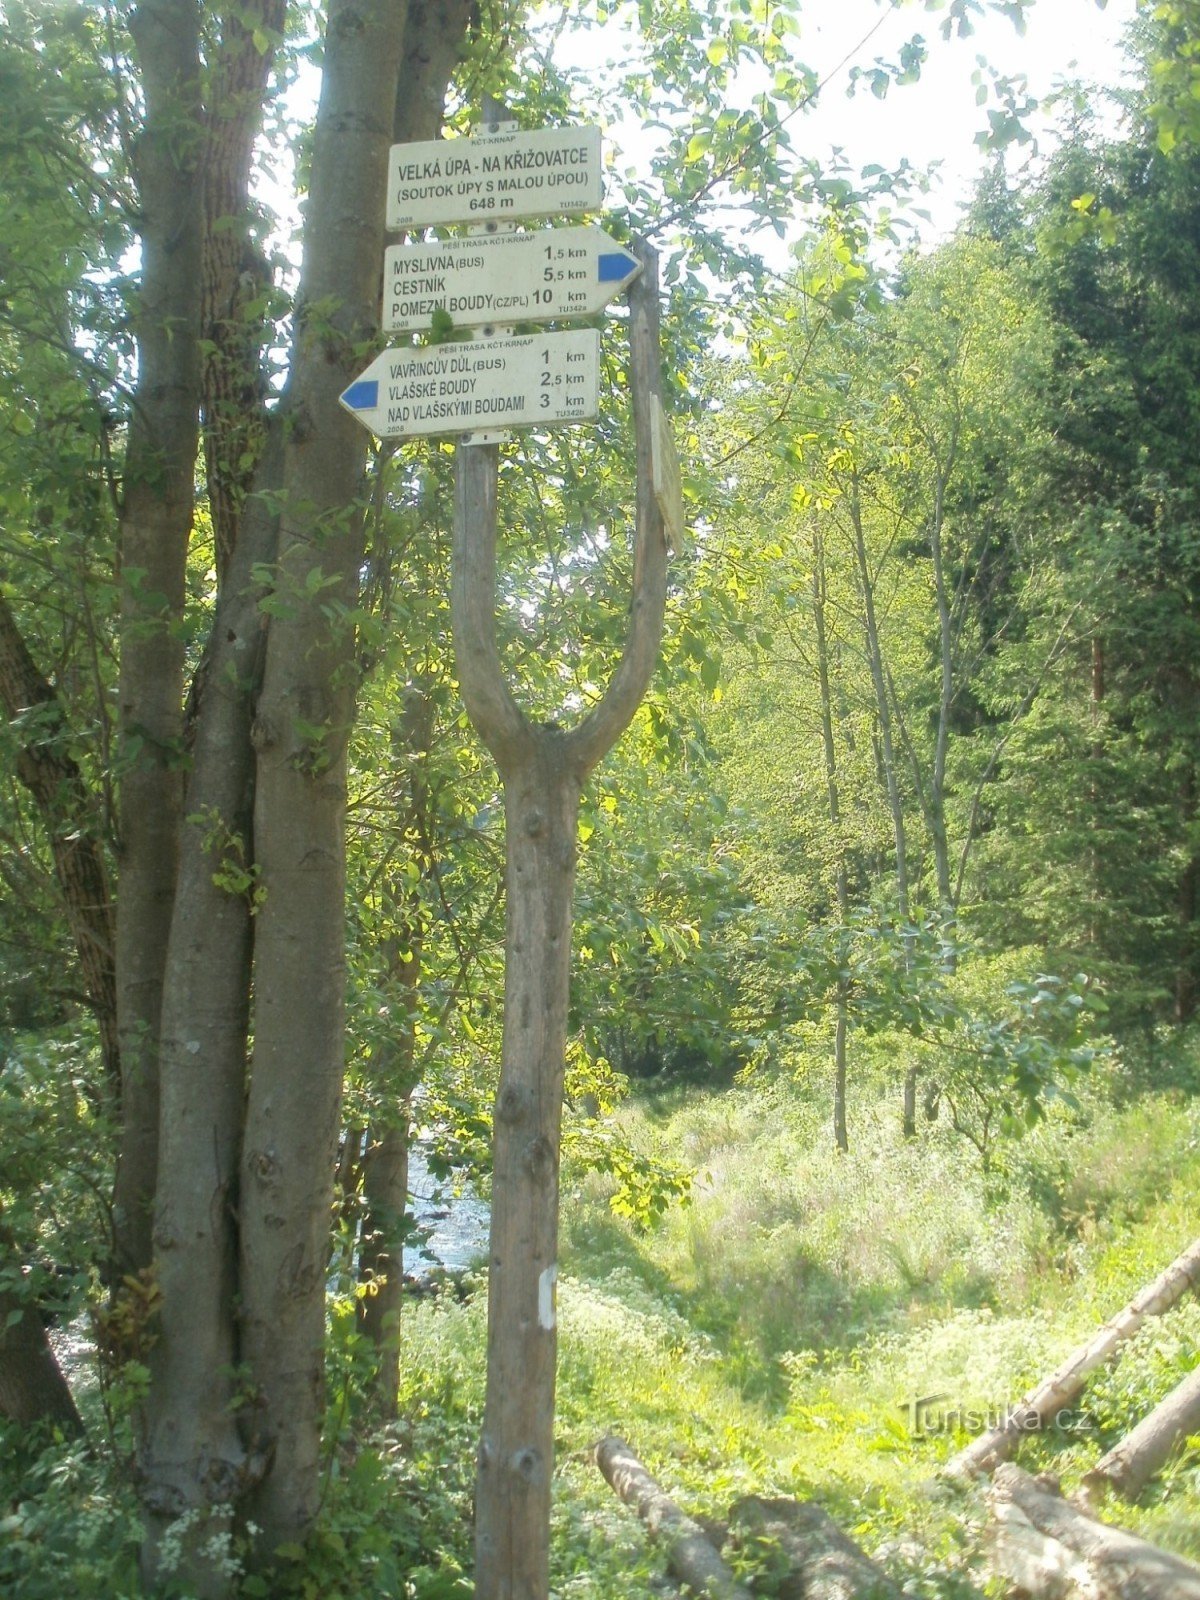 観光交差点 Velká Úpa - 交差点、Úpa と Mala Úpa の合流点